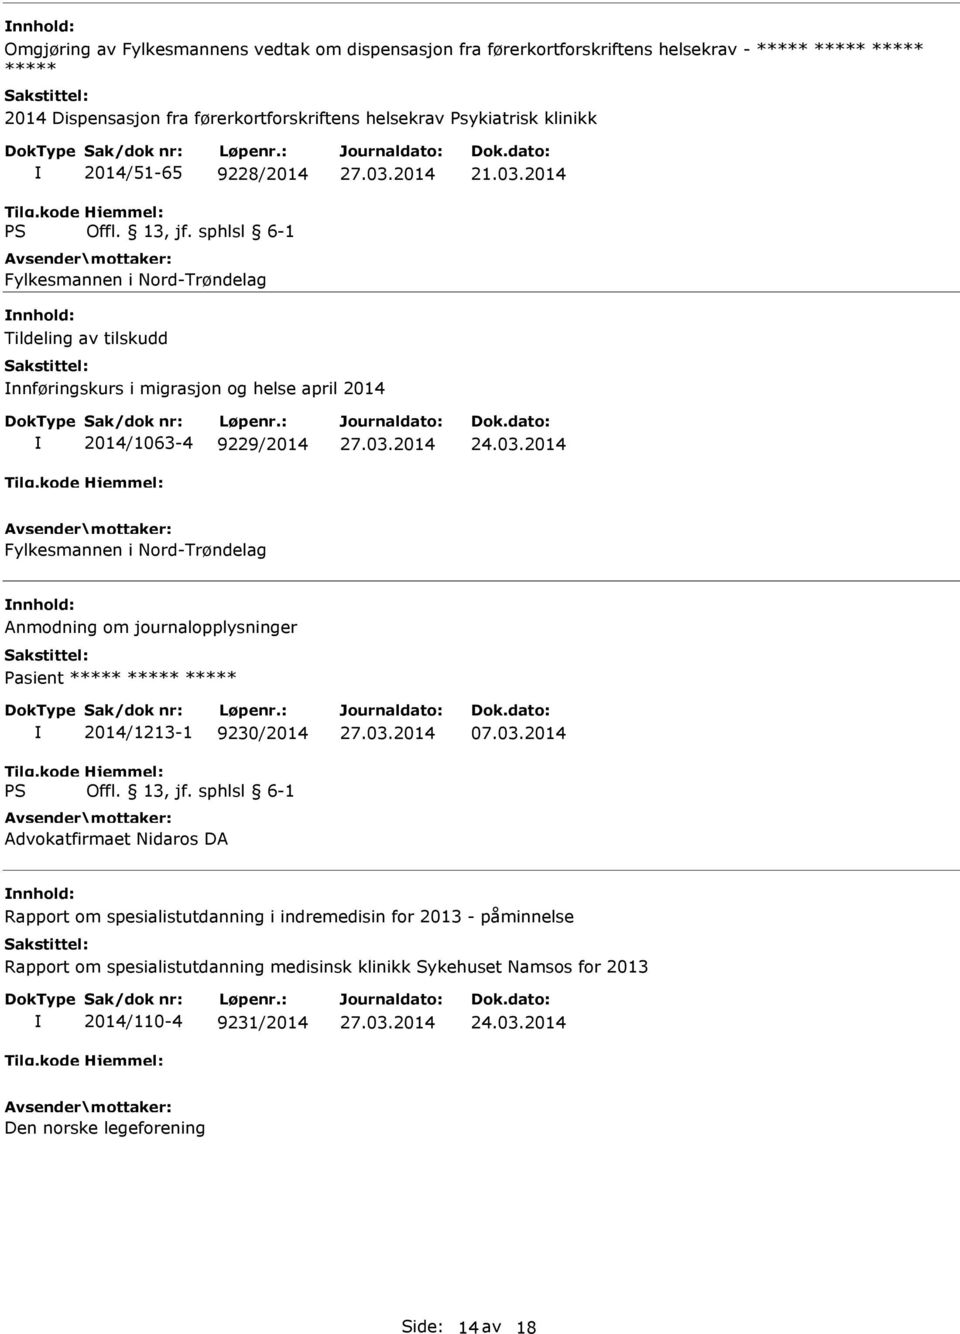 2014 Tildeling av tilskudd nnføringskurs i migrasjon og helse april 2014 2014/1063-4 9229/2014 Fylkesmannen i Nord-Trøndelag Anmodning om journalopplysninger Pasient *****